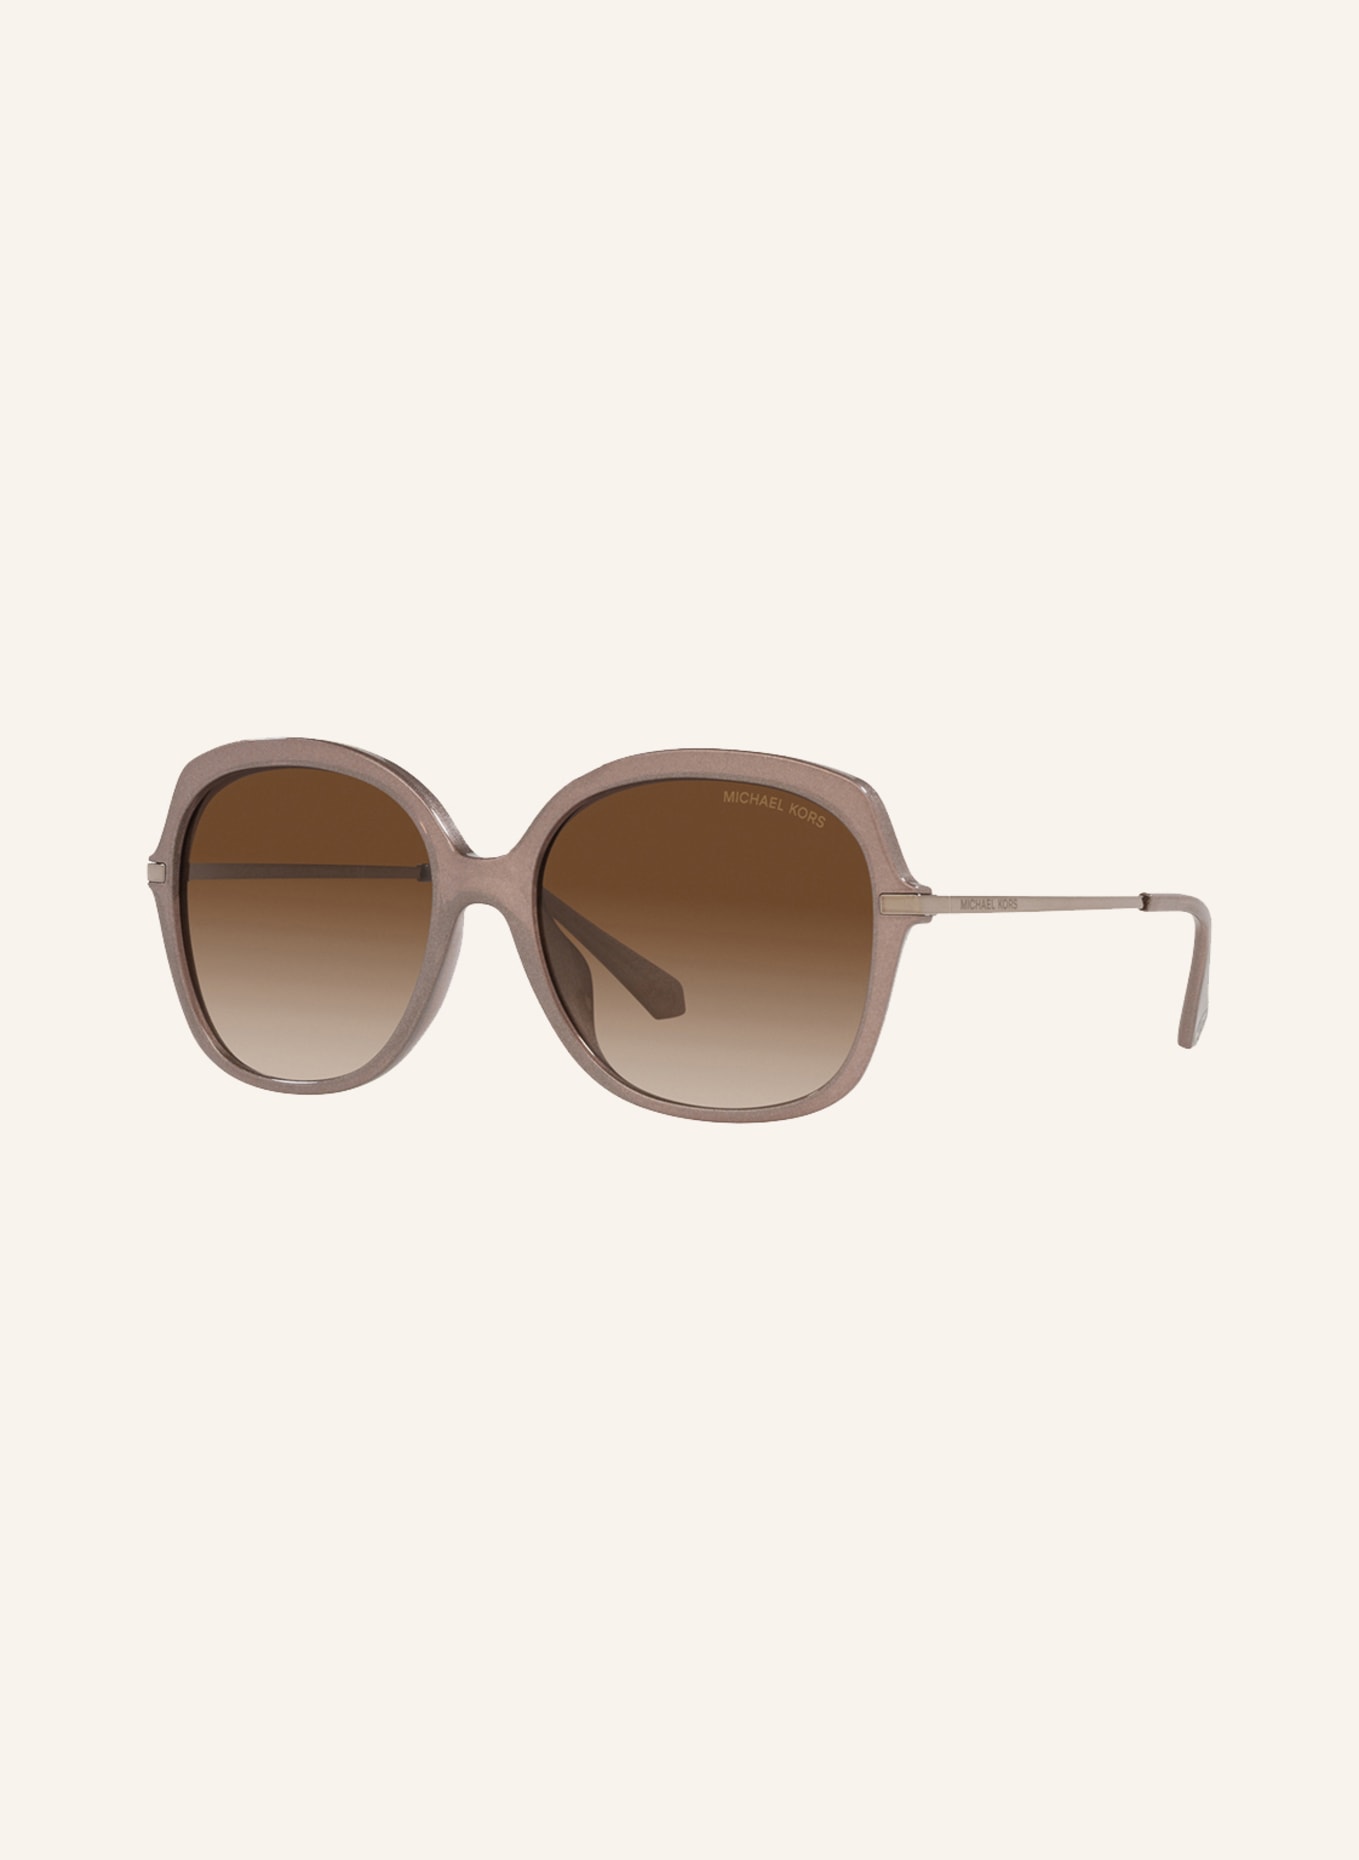 MICHAEL KORS Sunglasses MK2149U, Color: 390013 - ROSE/ BROWN GRADIENT (Image 1)